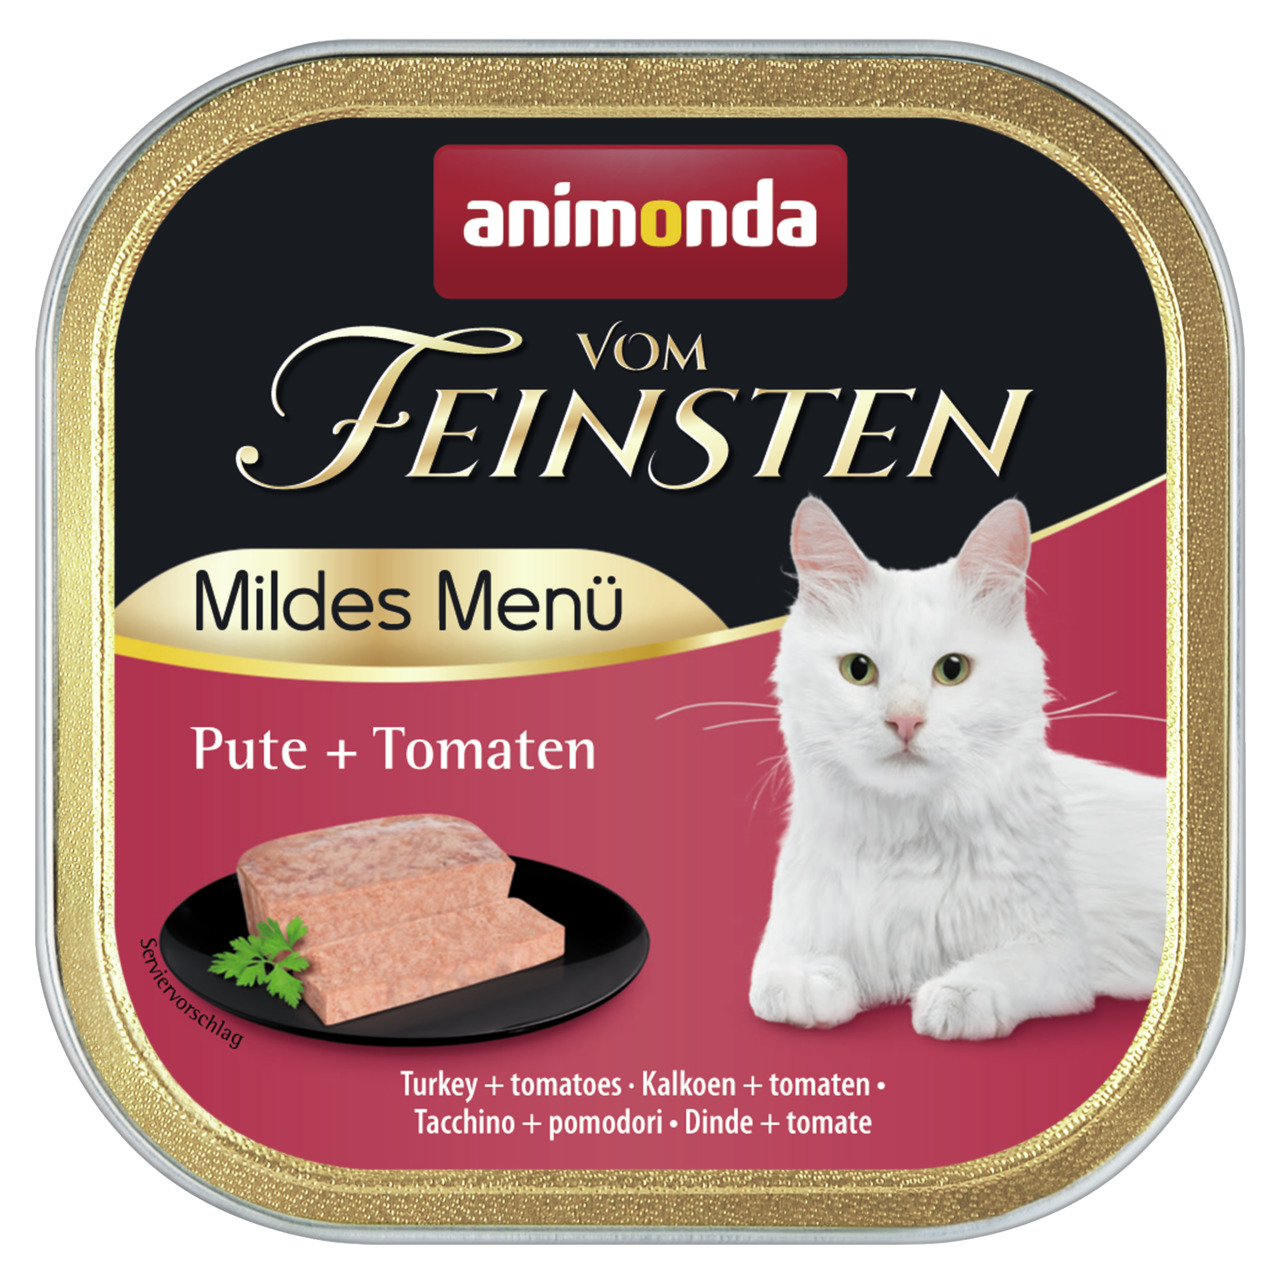 Animonda vom Feinsten Mildes Menü Pute + Tomaten Katzen Nassfutter 100 g